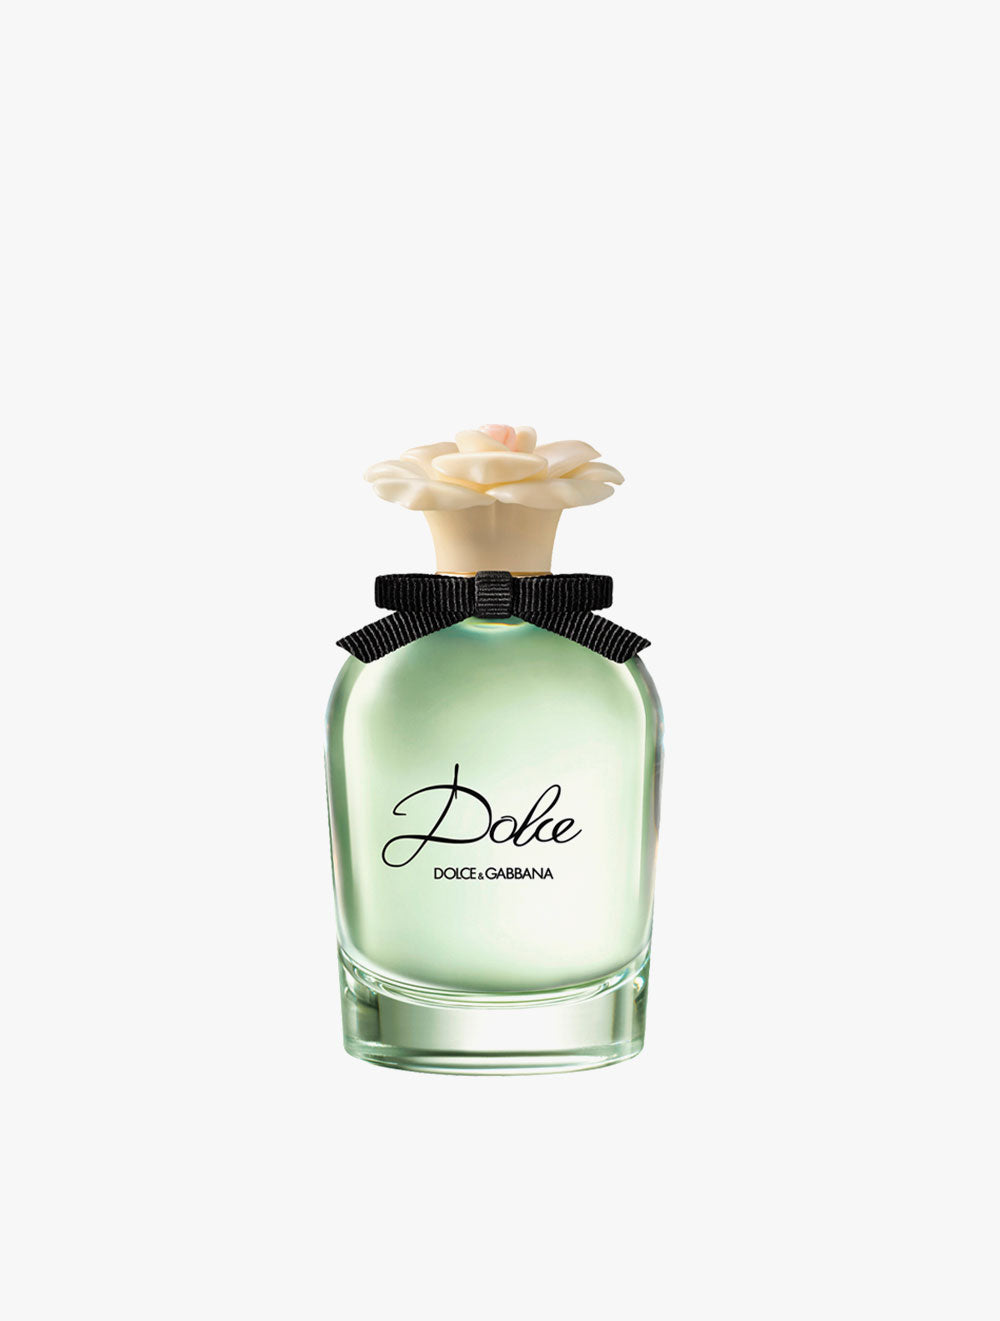 DOLCE & GABBANA DOLCE Eau de Parfum